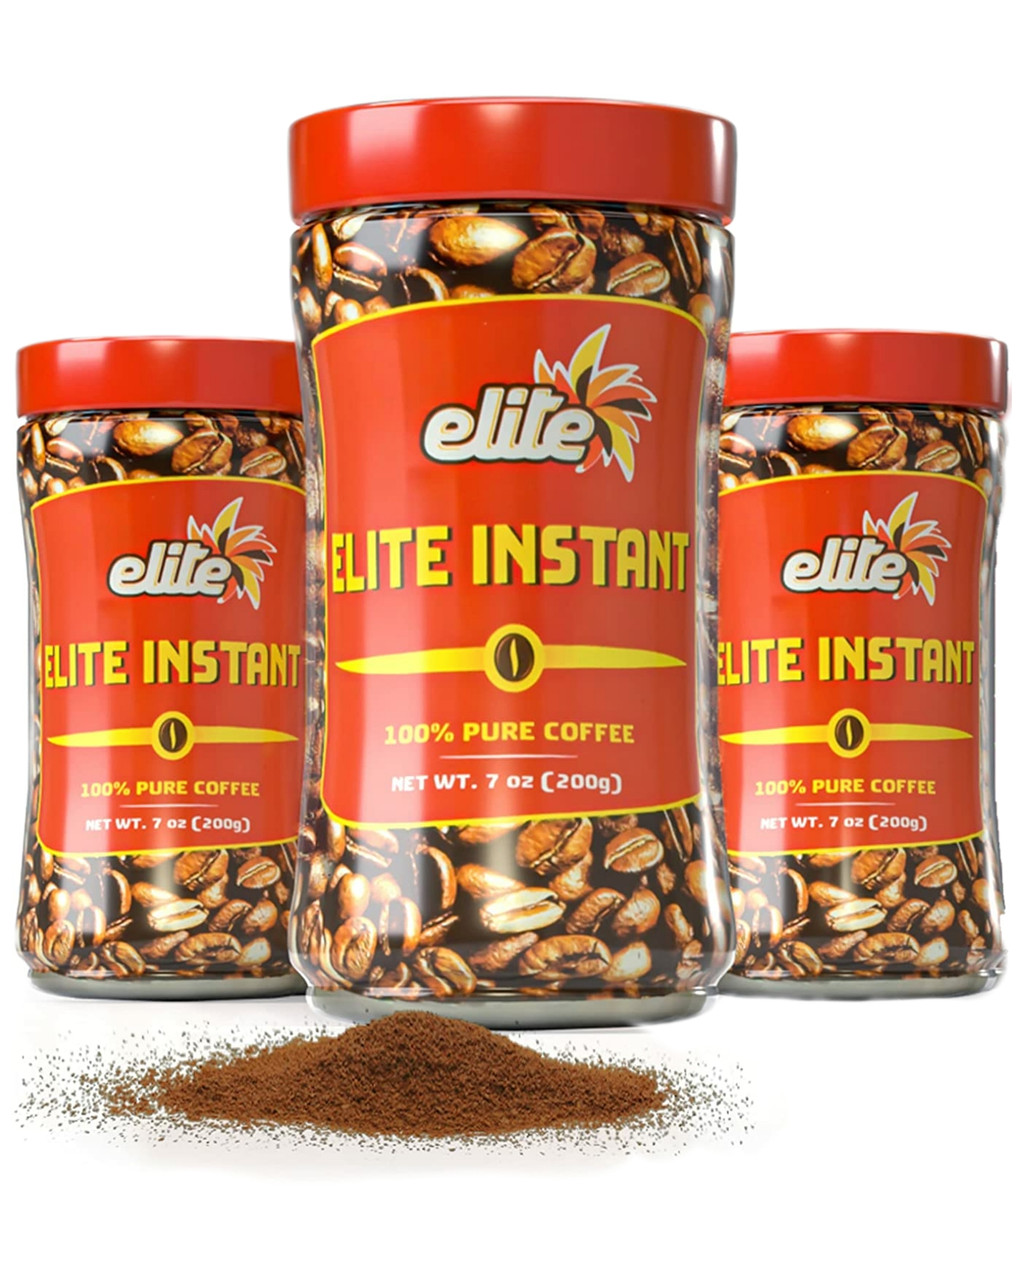 Elite Coffee, 100%, Instant - 7 oz